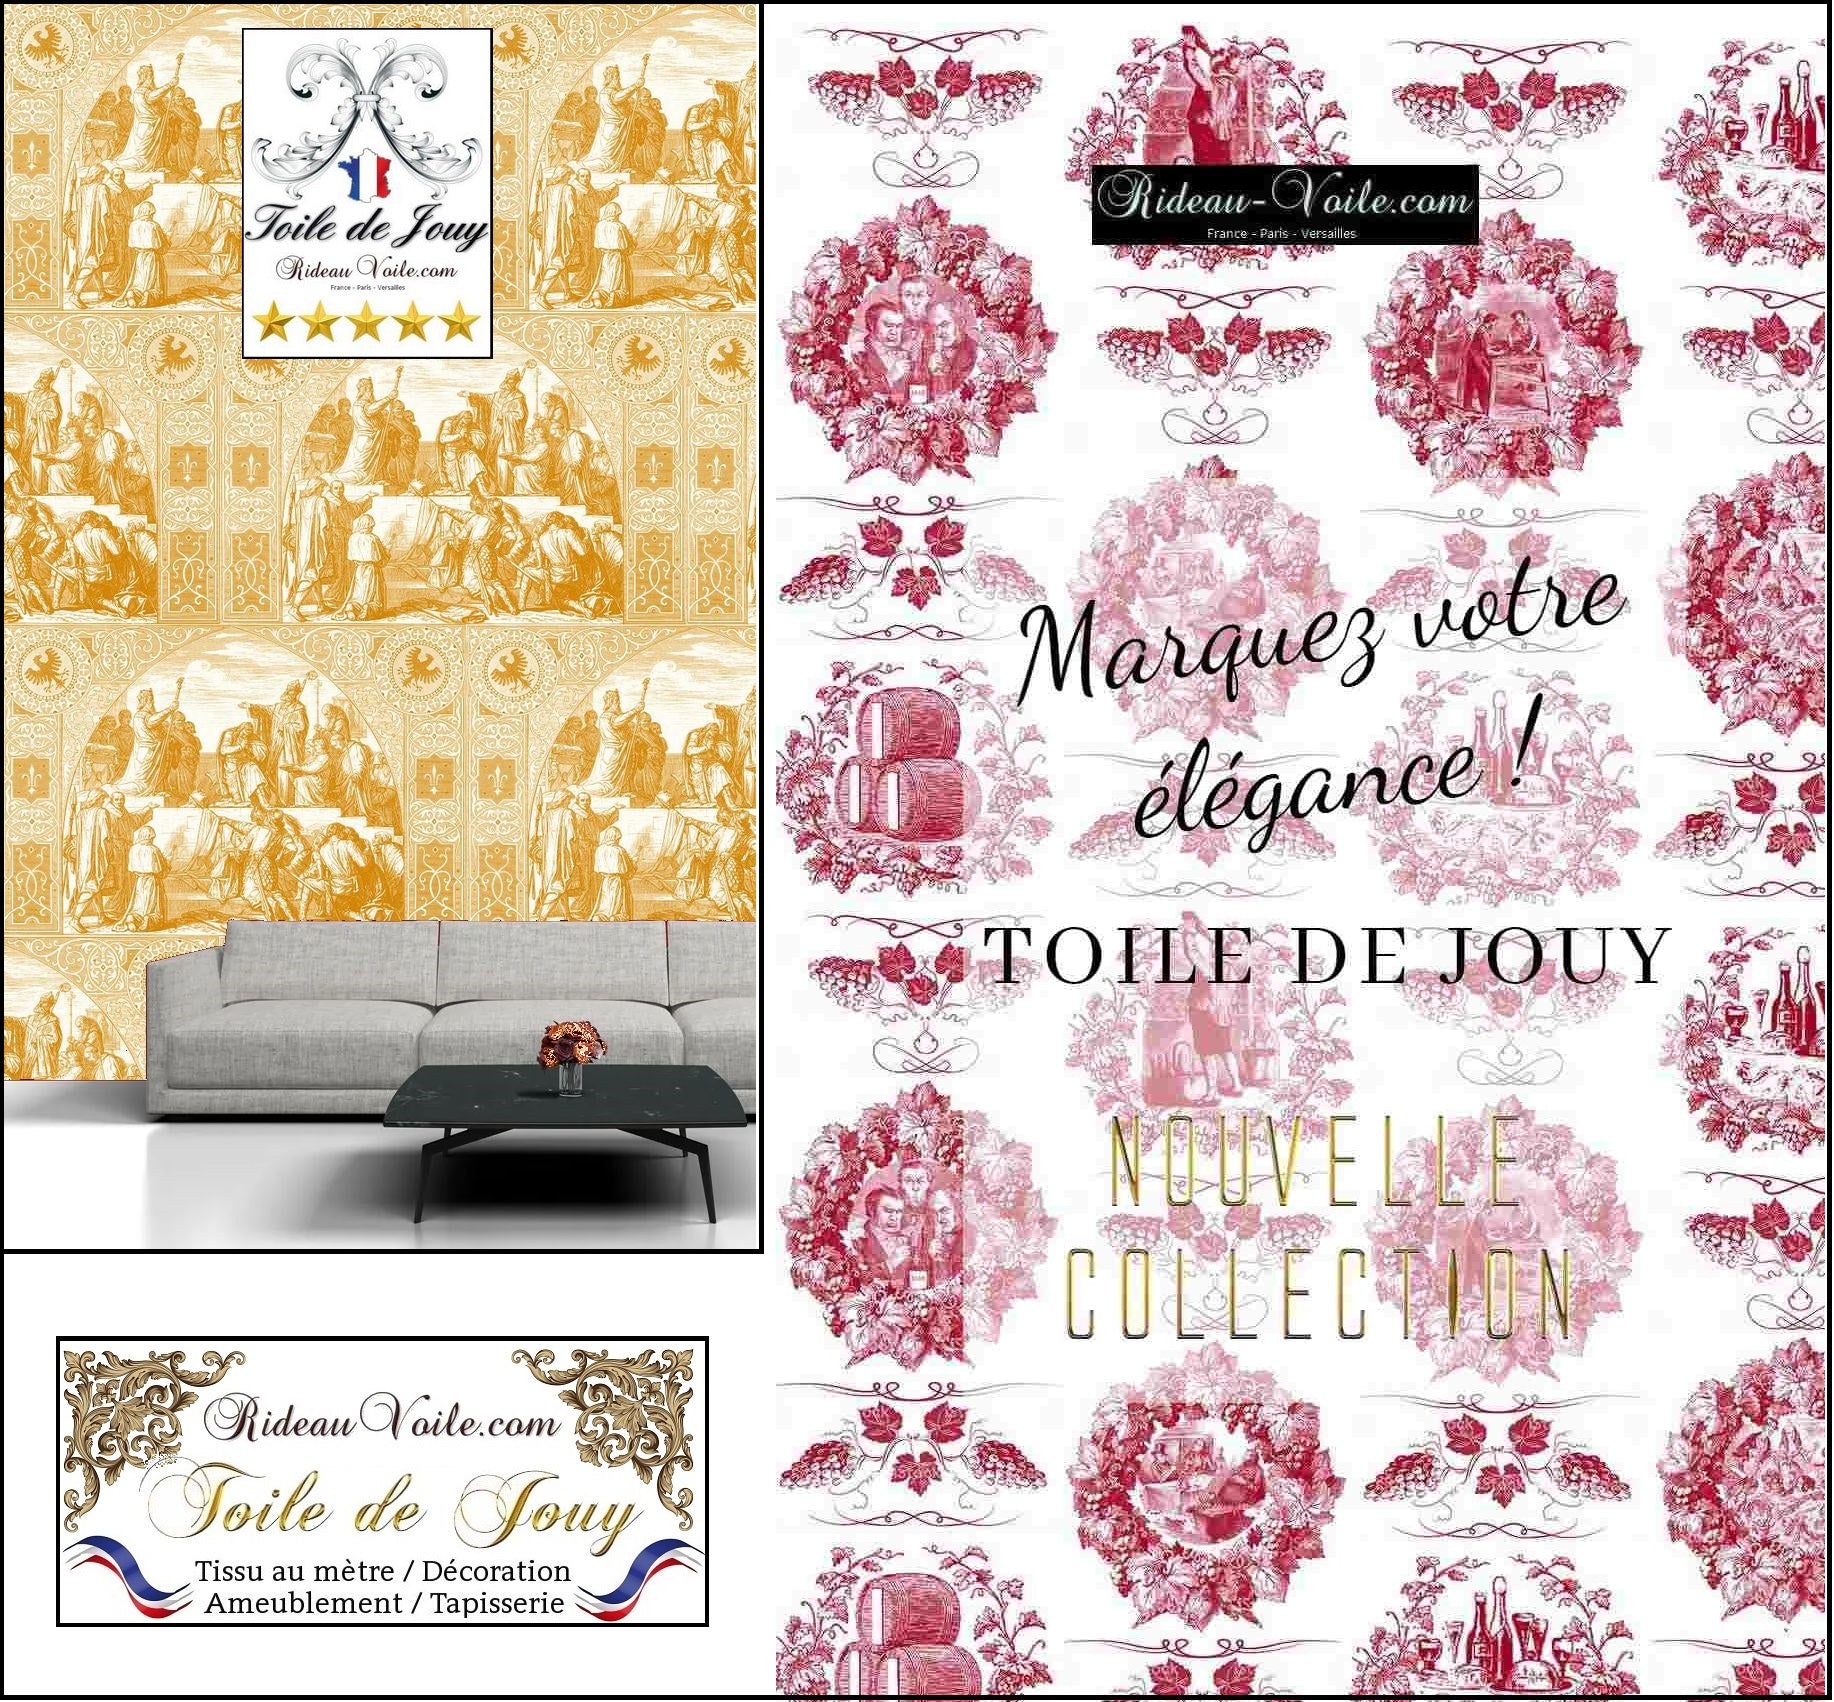 Toile de jouy tissu ameublement boutique Paris Versailles Belgique Monaco Bruxelles Luxembourg décoration rideau